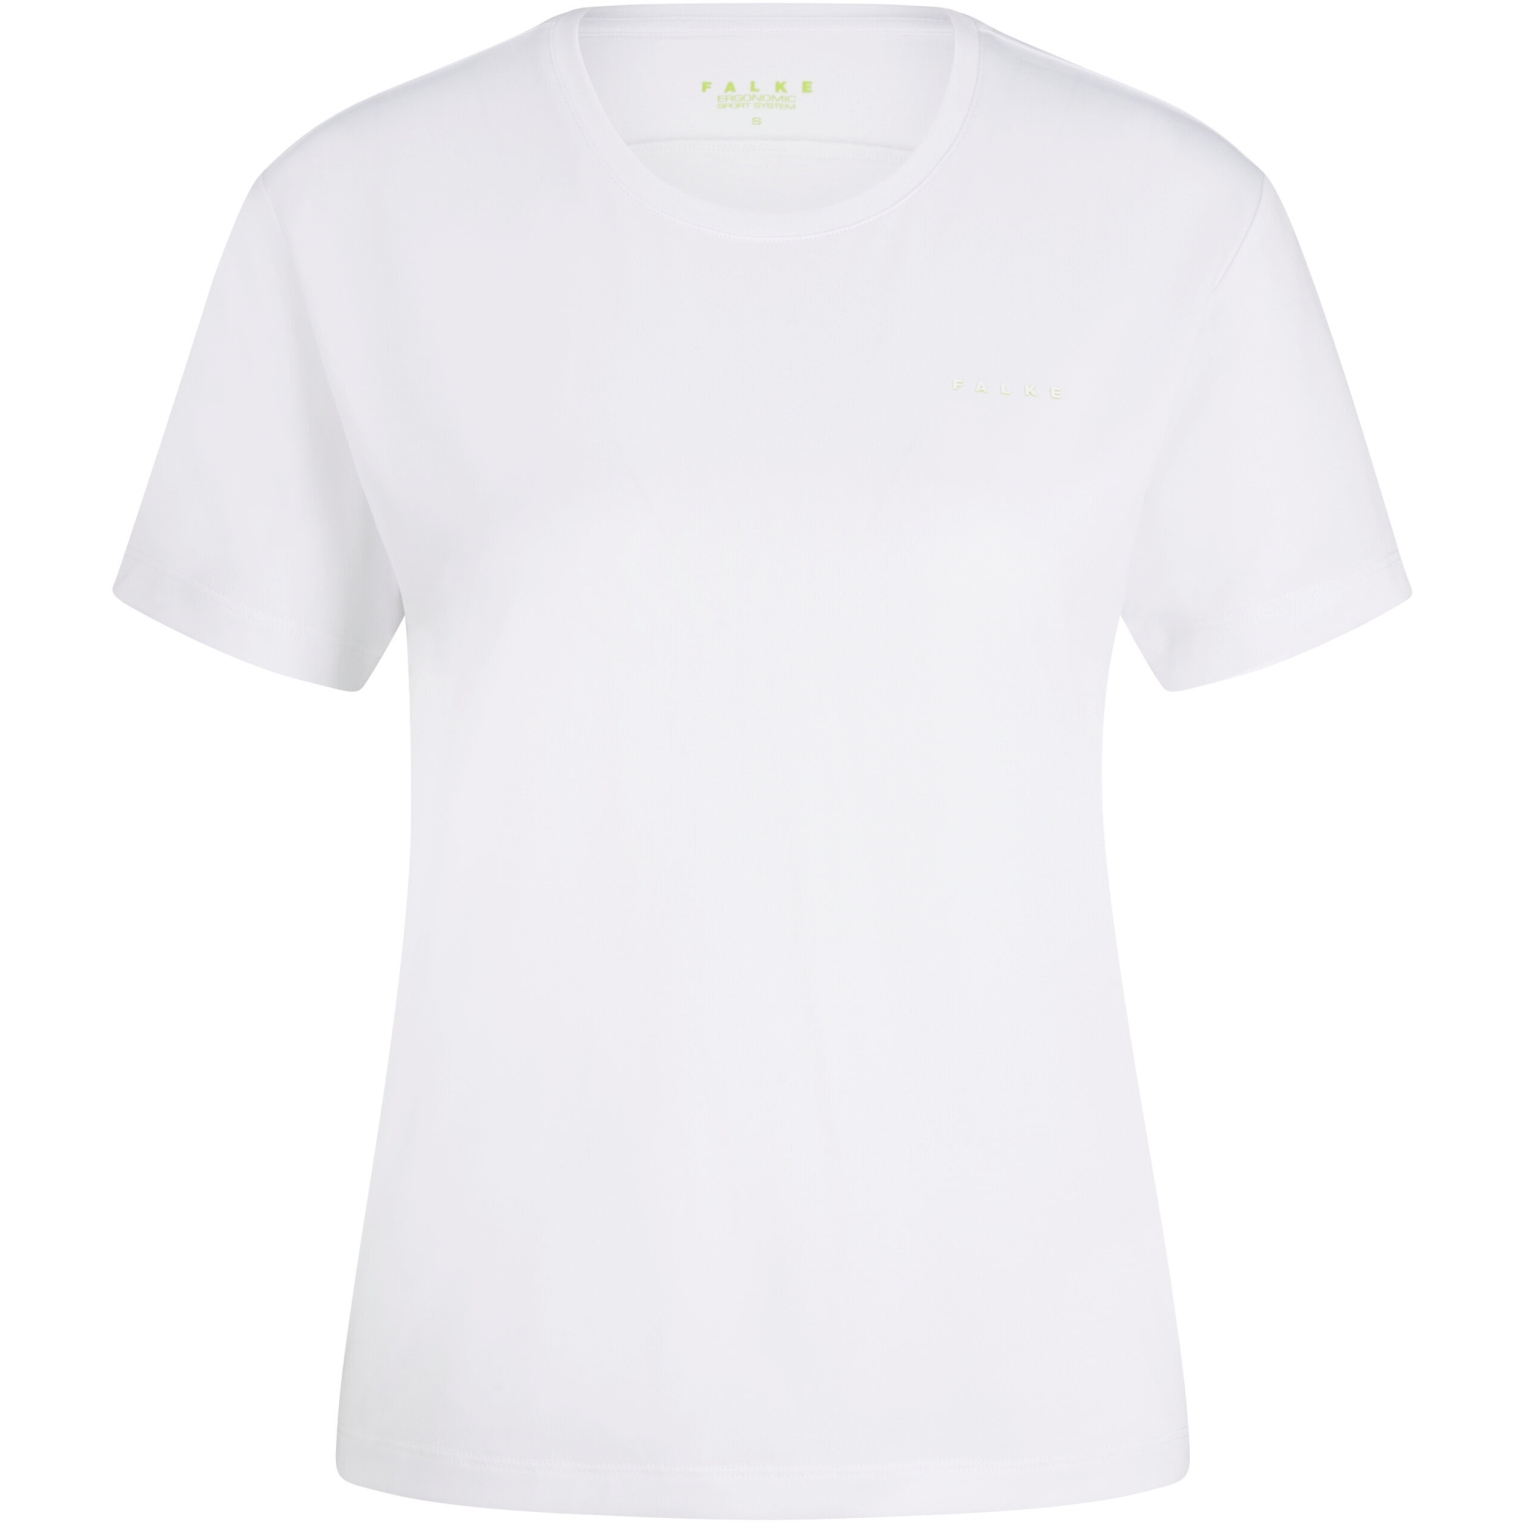 Produktbild von Falke TK1 T-Shirt Damen - weiß 2860